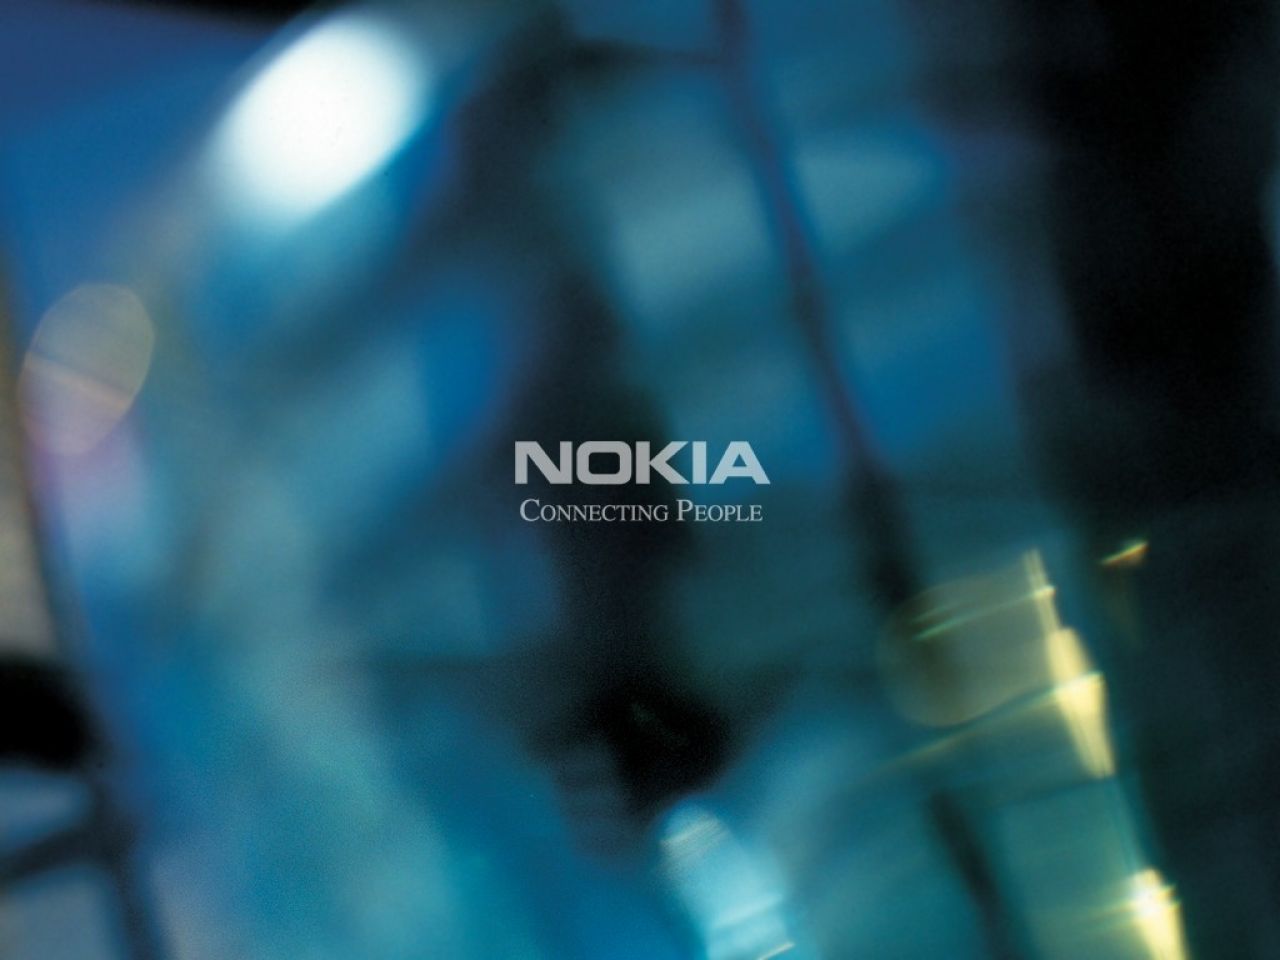 Nokia wallpaper: Những hình nền Nokia đẹp và sắc nét sẽ khiến bạn cảm thấy thư thái và bình yên trên chiếc điện thoại của mình. Hãy thưởng thức những bức tranh ảo diệu này để đưa bạn đi thật xa và khám phá thế giới của riêng mình.